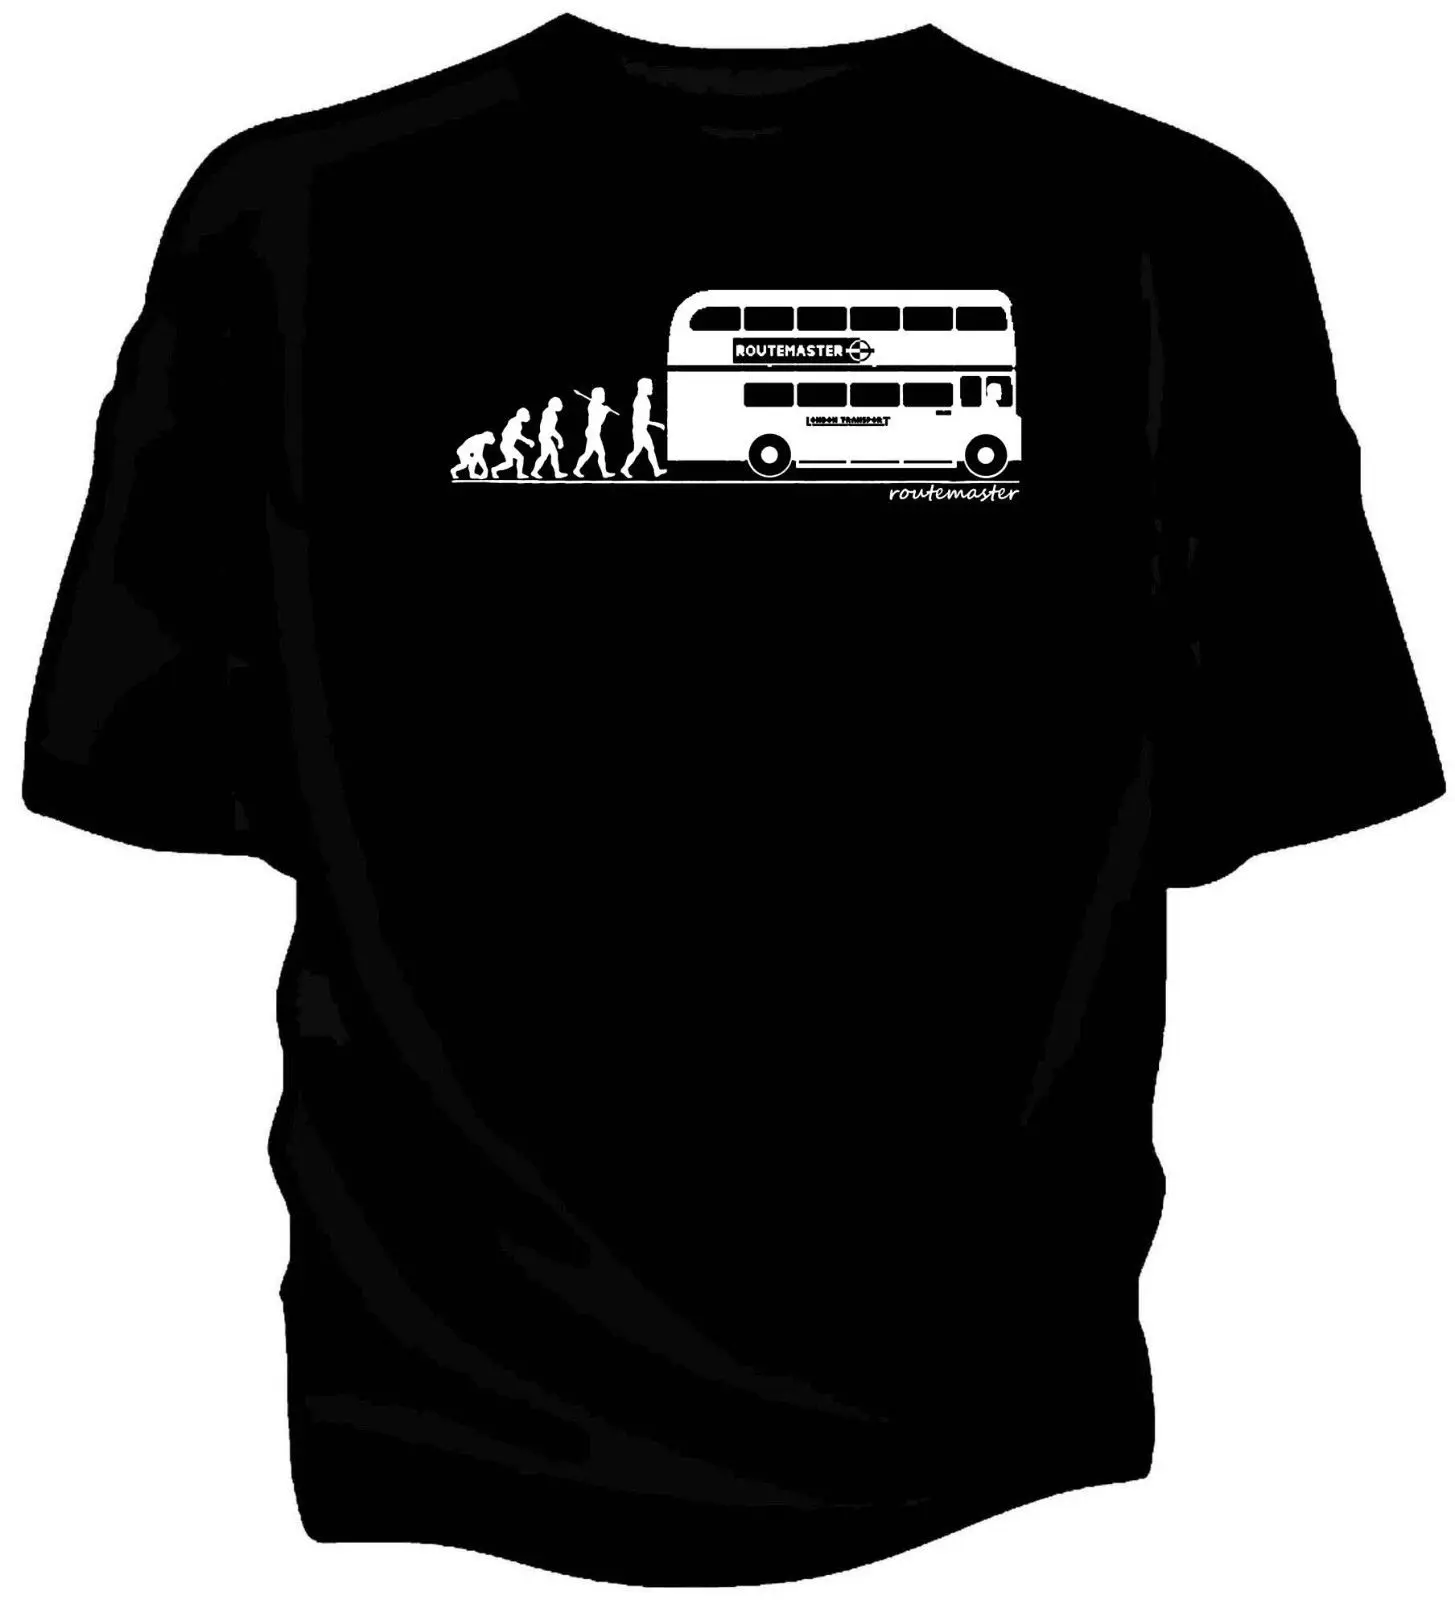 Эволюция человека, Лондонская транспортная rotemaster автобусная футболка. Новые модные крутые повседневные футболки